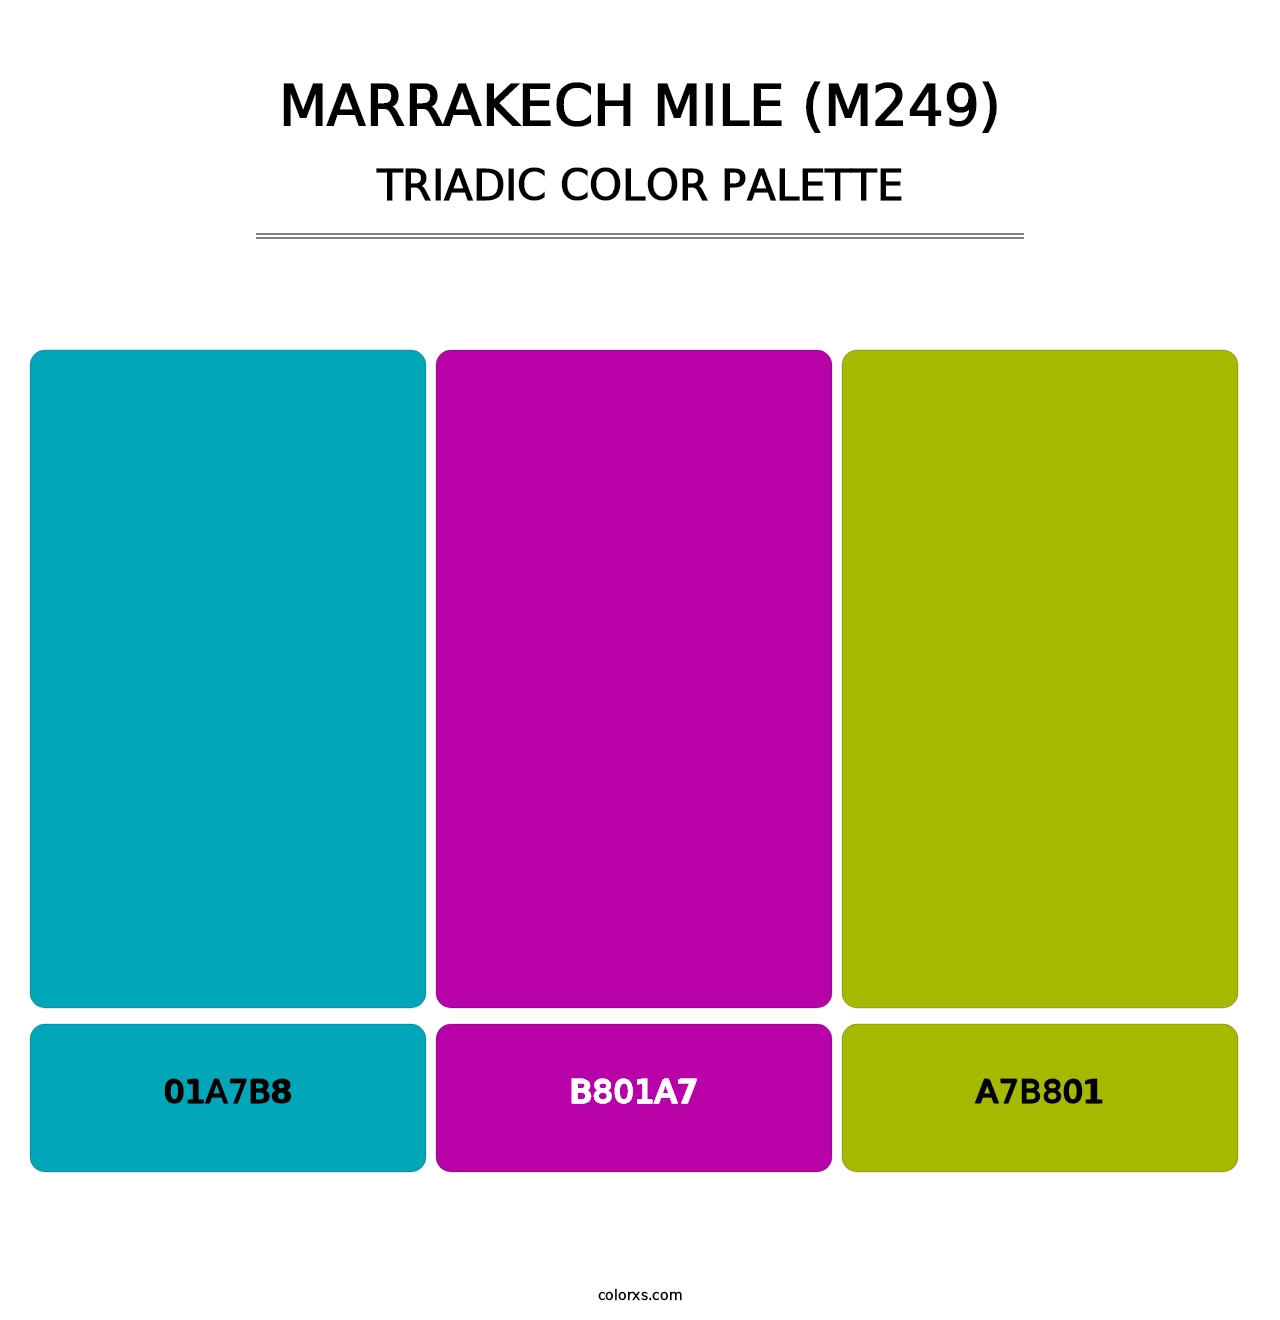 Marrakech Mile (M249) - Triadic Color Palette